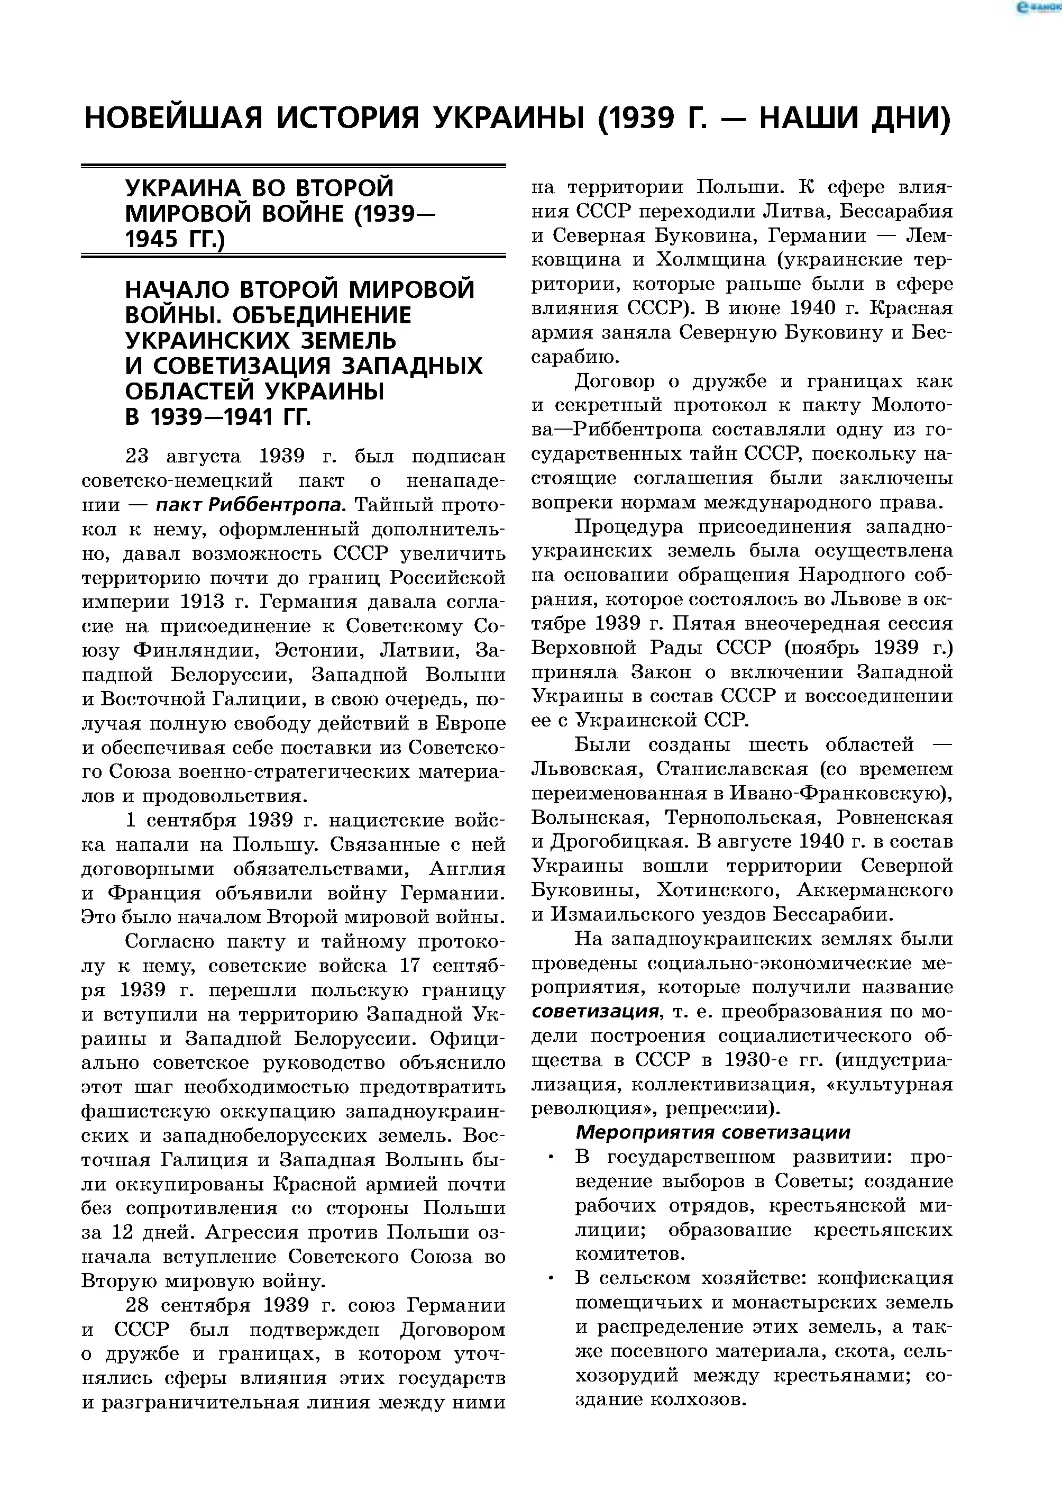 Новейшая история Украины (1939 г. — наши дни)
Украина во Второй мировой войне (1939—1945 гг )